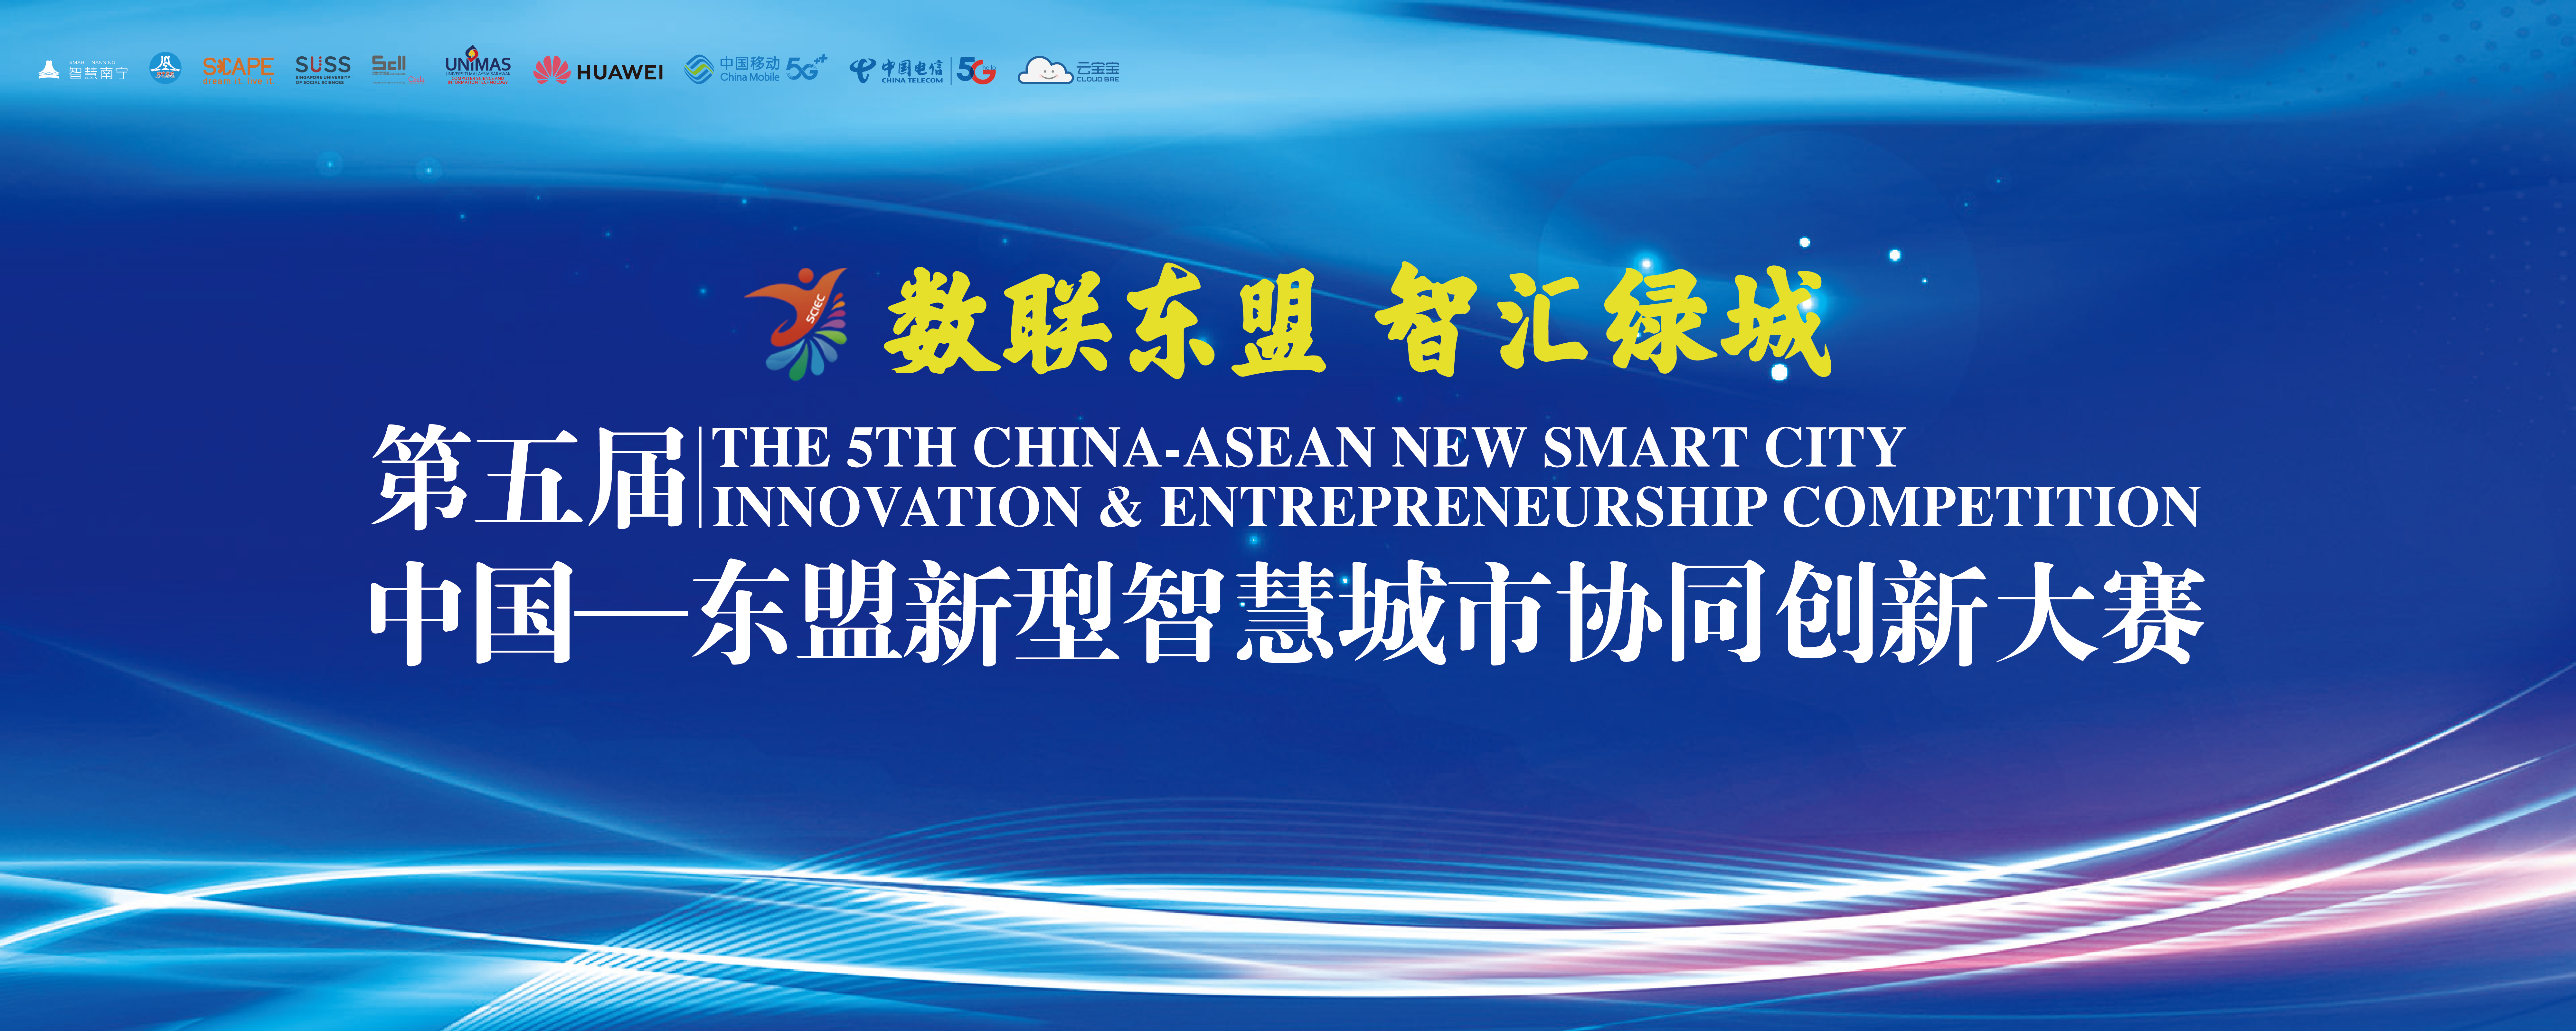 南宁市发展和改革委员会关于第五届中国-东盟新型智慧城市协同创新大赛决赛成绩的公示